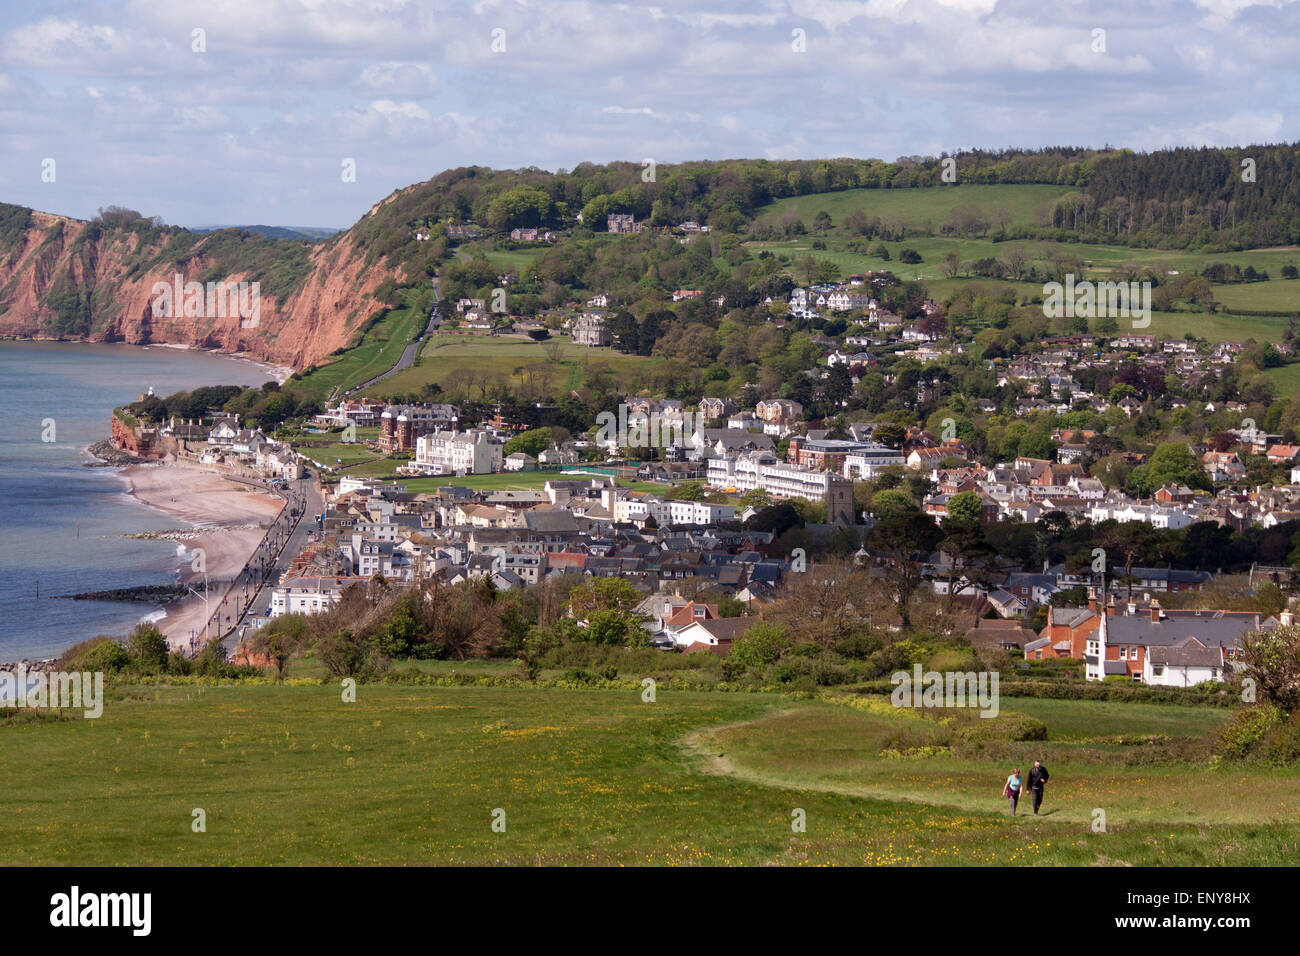 La ville de Sidmouth. Les promeneurs sur le chemin côtier du sud-ouest de Salcombe Hill Climb Cliff, à Sidmouth, dans le Devon, avec la ville et la baie de Lyme derrière. Banque D'Images